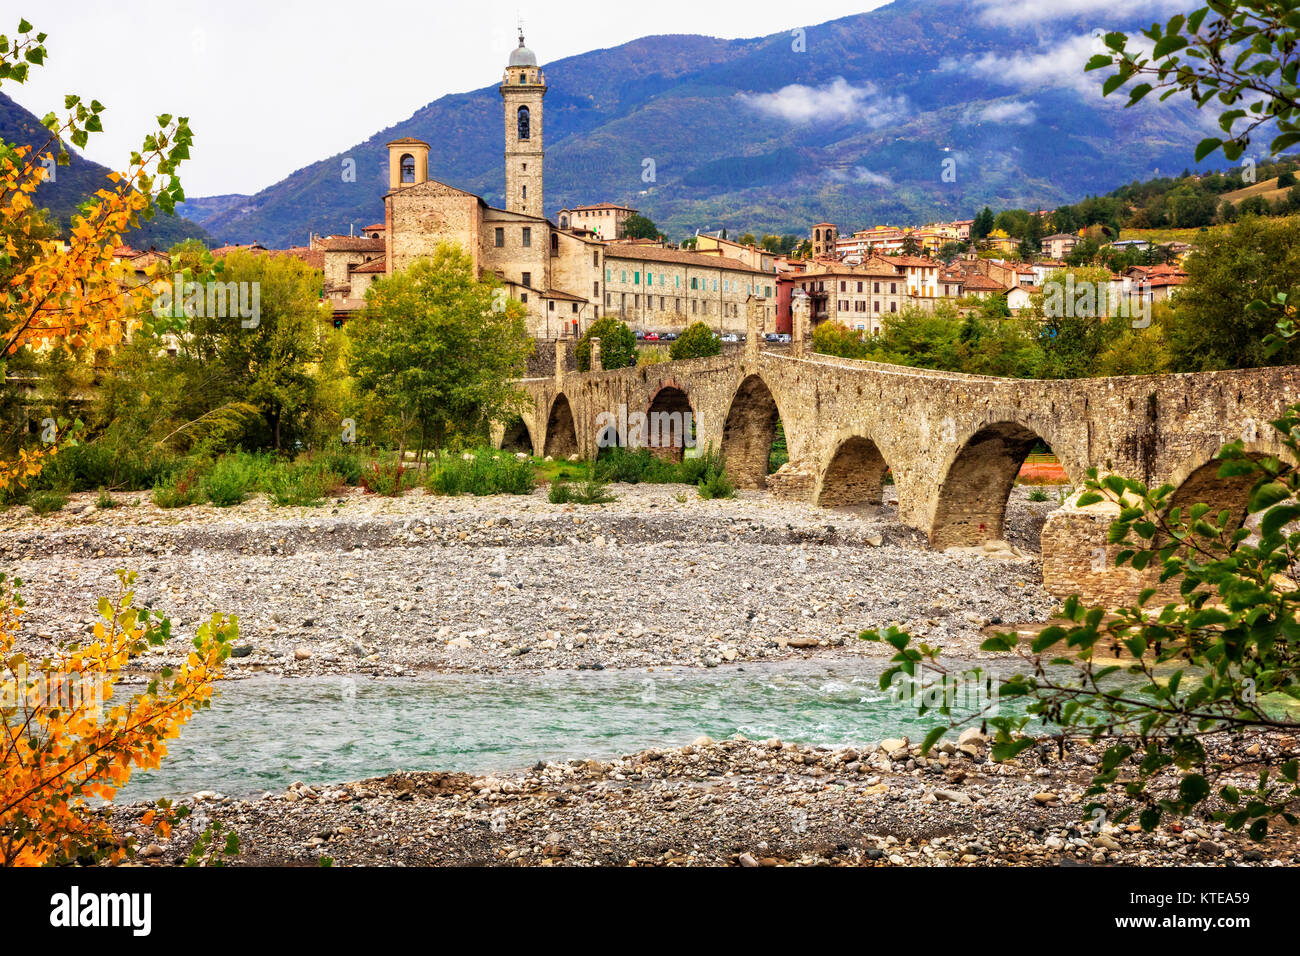 Bellissimo villaggio di Bobbio,vista con ponte vecchio e case tradizionali,Emilia Romagna,l'Italia. Foto Stock